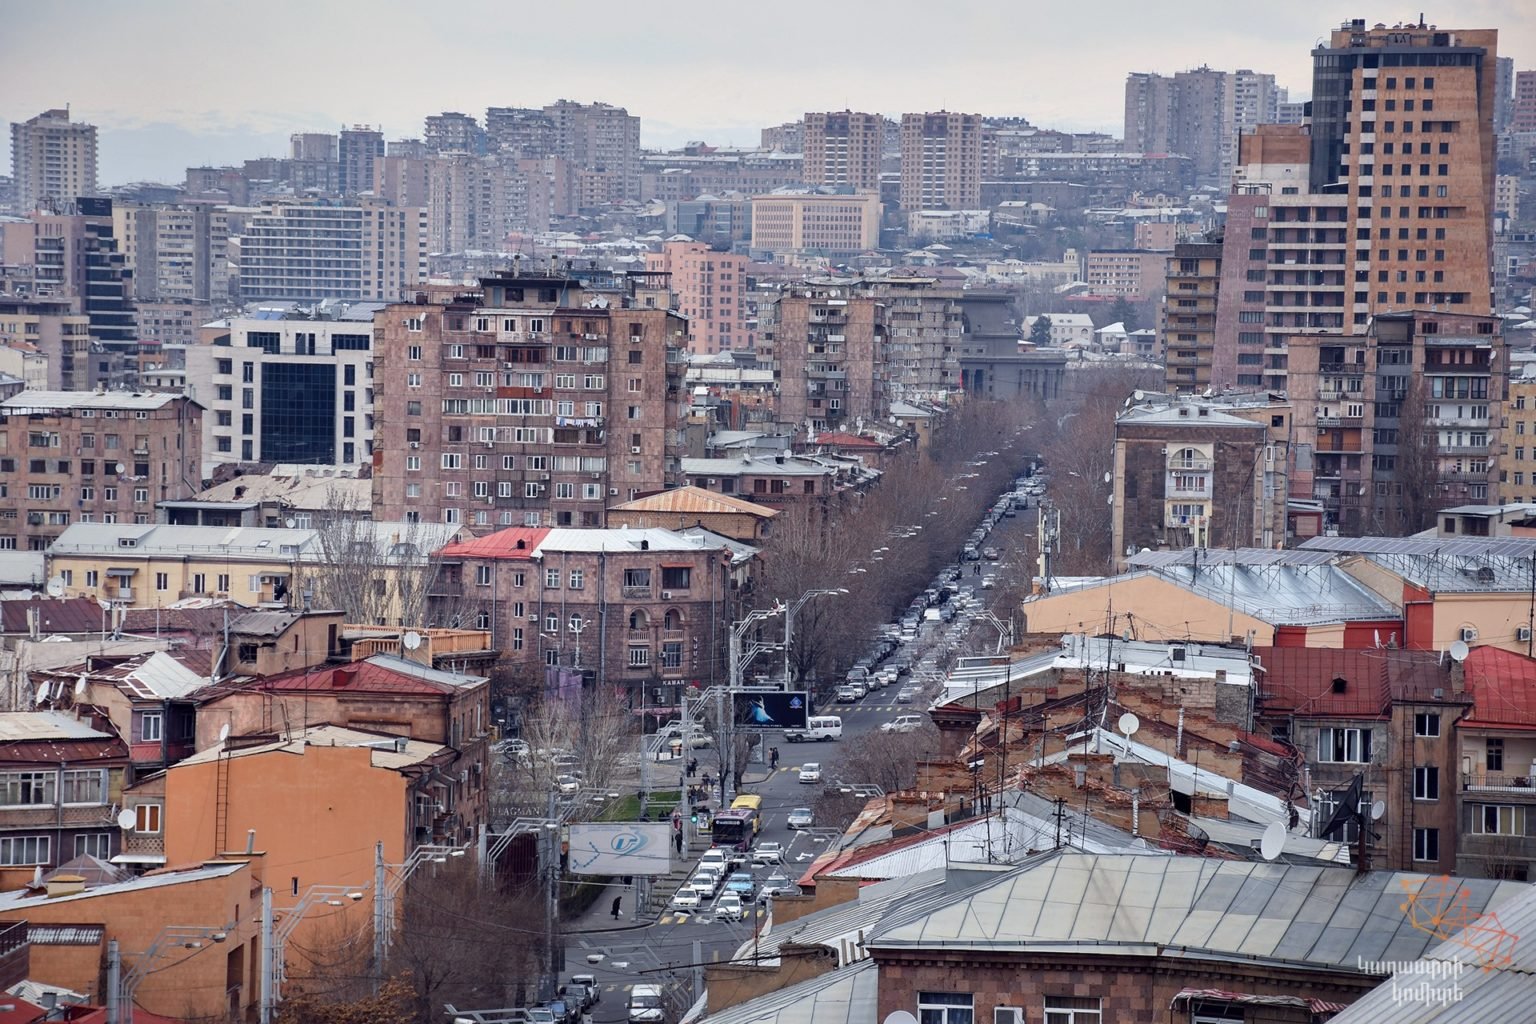 Հայաստանի ամենաթանկ և ամենաէժան բնակարանները. ԱՎԾ-ի տվյալներով՝ բնակարանների գները նախորդ տարվա համեմատ նկատելի աճել են